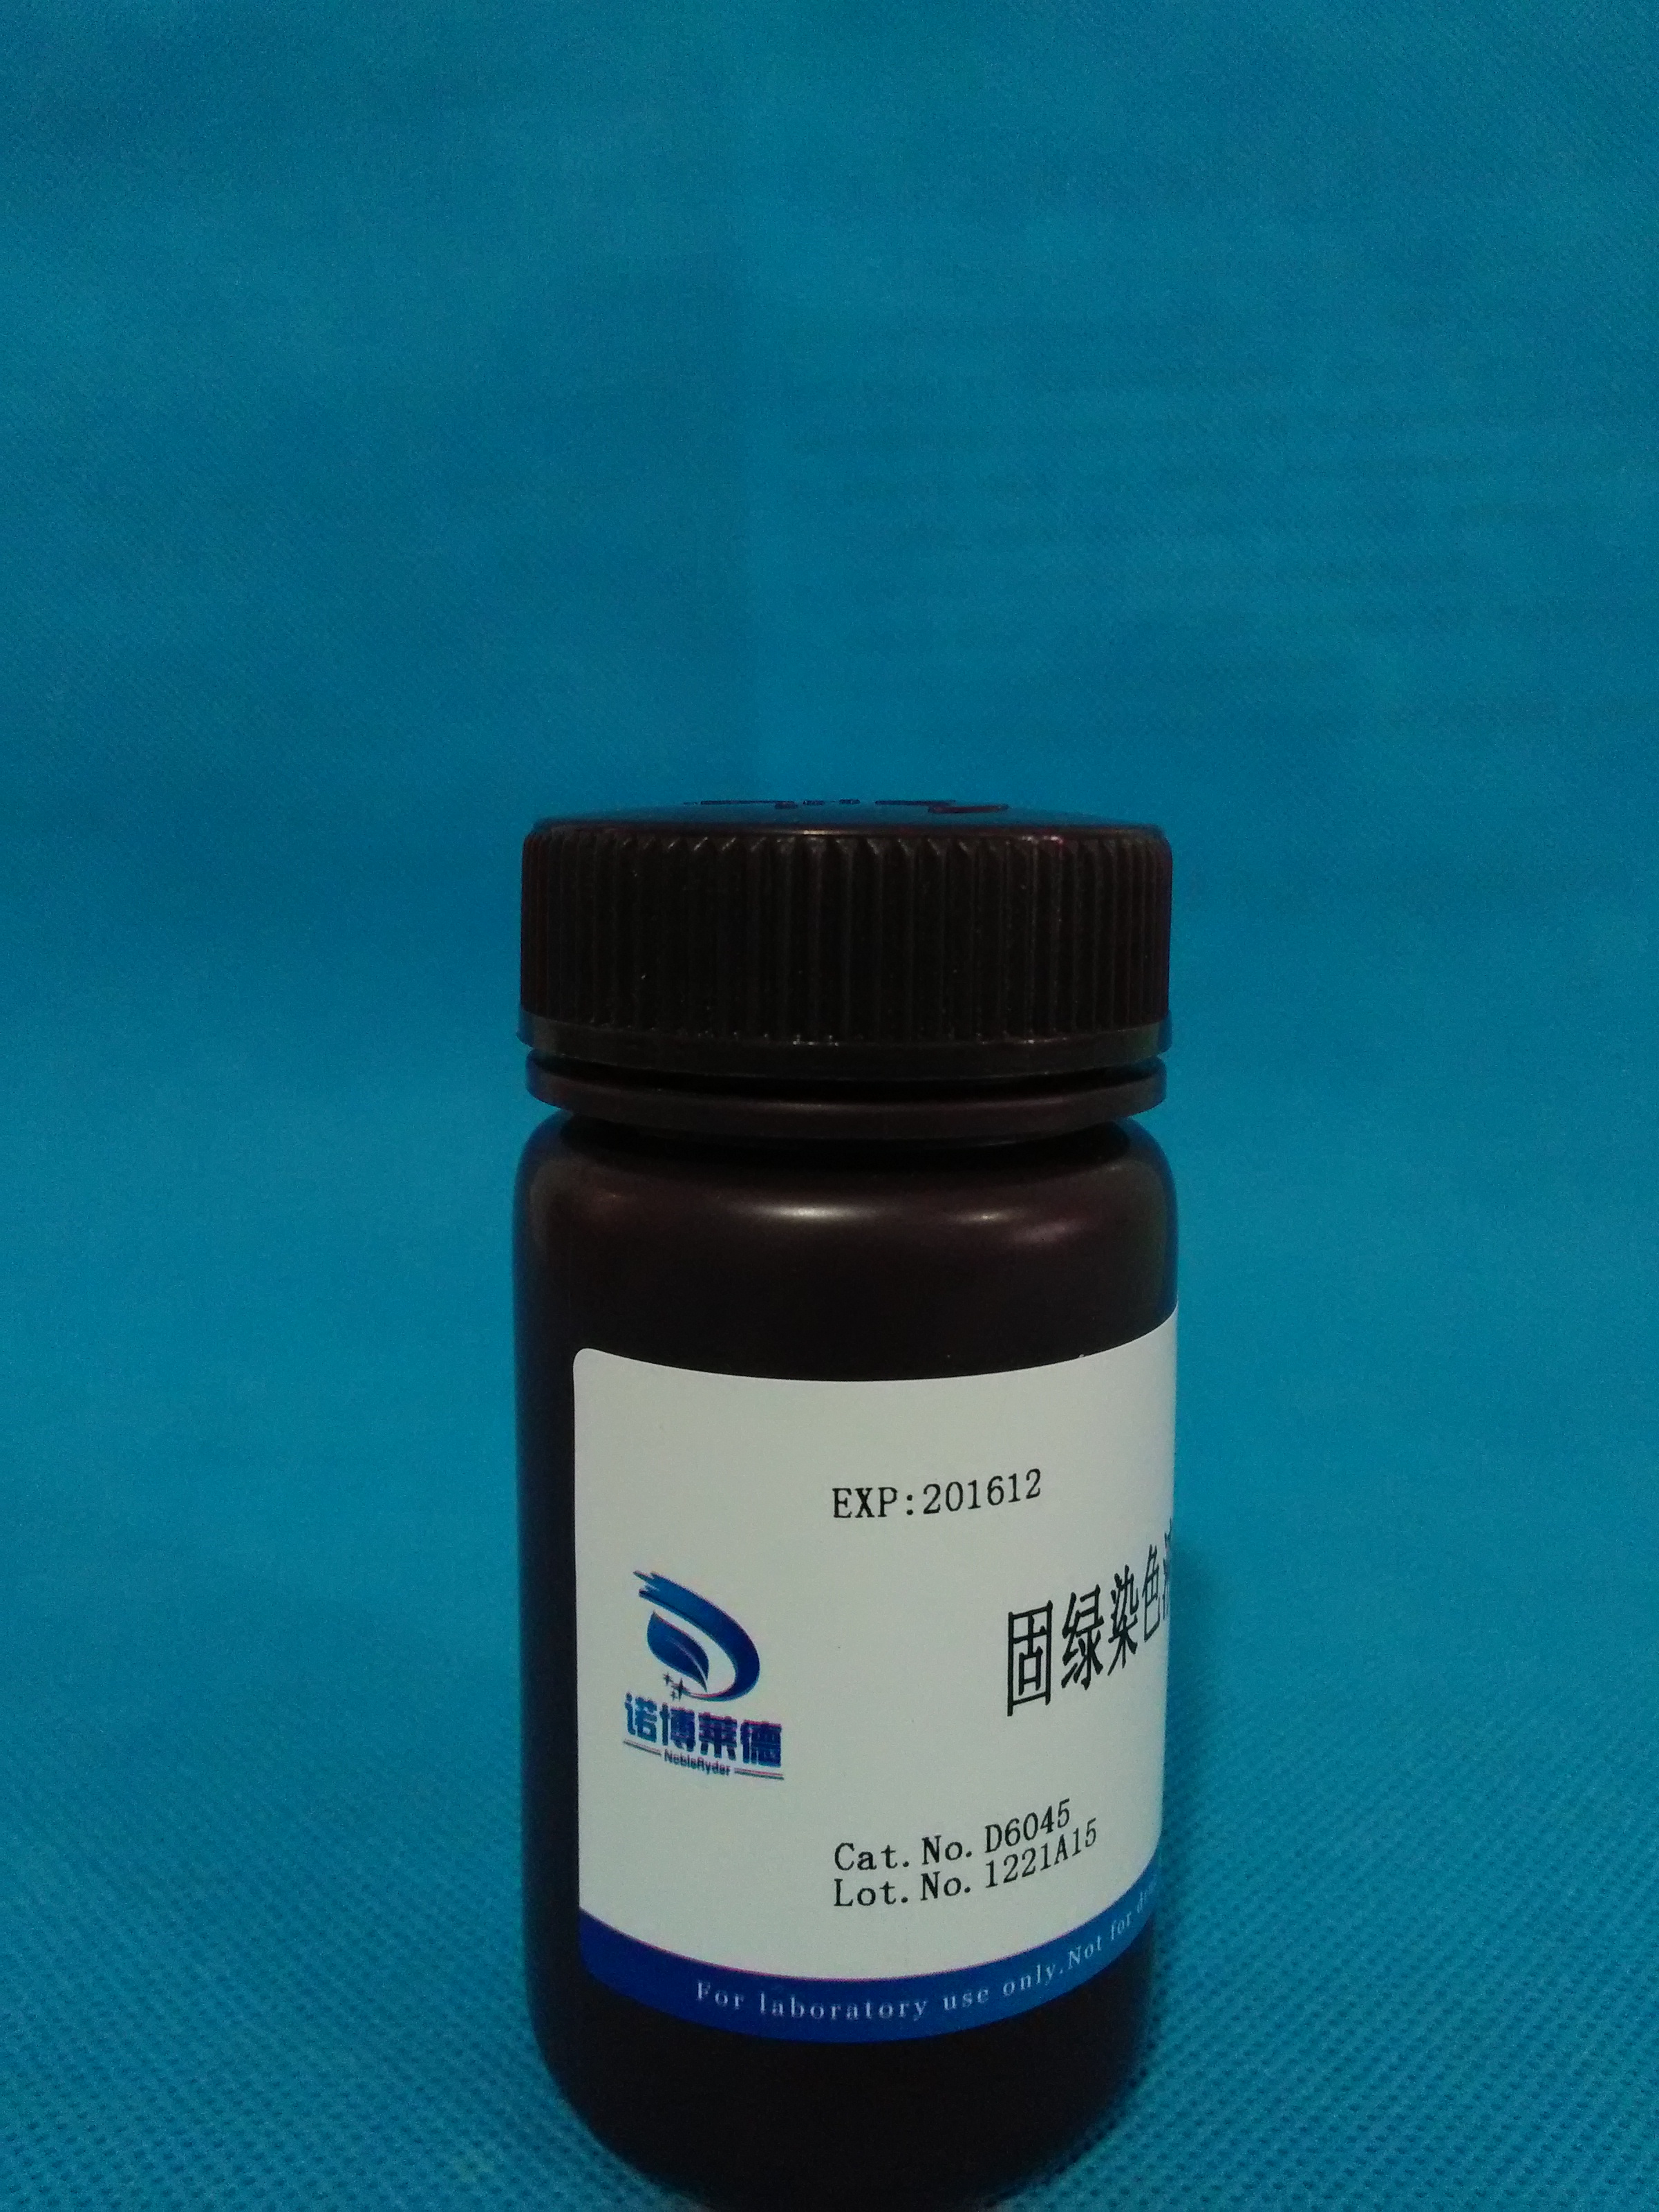 供应固绿染色液(0.1%)NobleRyder D6045 染色液100ml现货质量保证量大优惠